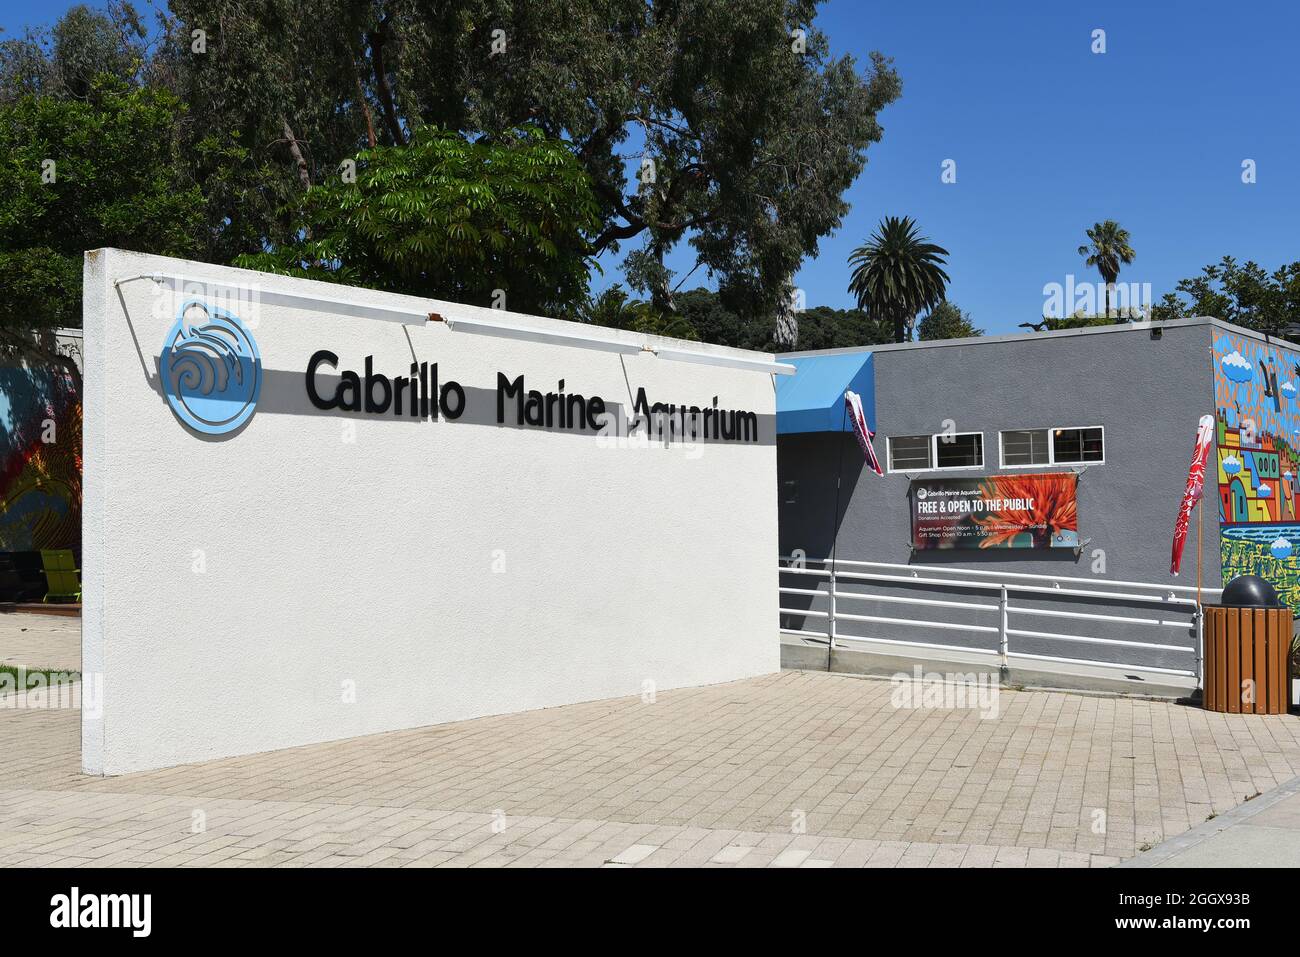 SAN PEDRO, CALIFORNIA - 27 AUG 2021: The Cabrillo Marine Aquarium features indoor and outdoor exhibit spaces, an auditorium and wet laboratories. Stock Photo